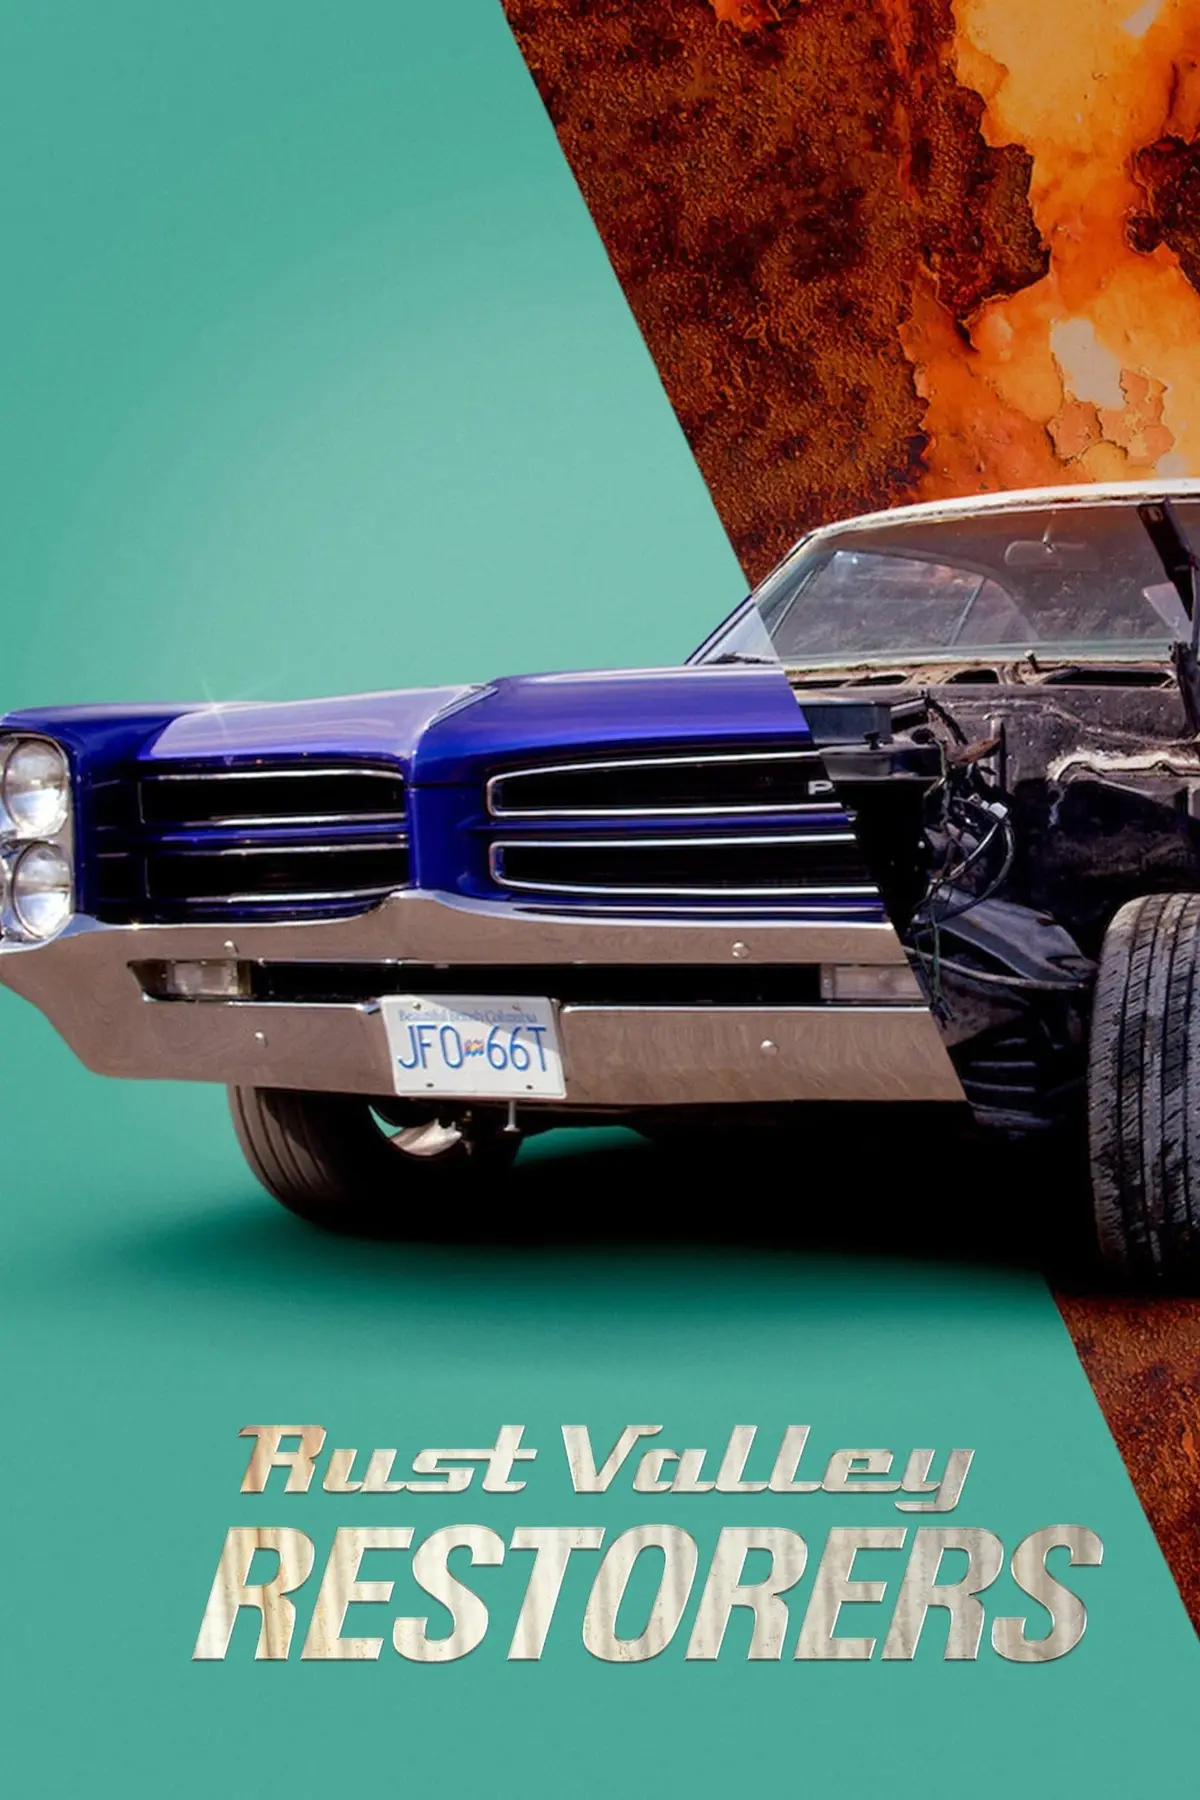 Les mécanos de Rust Valley